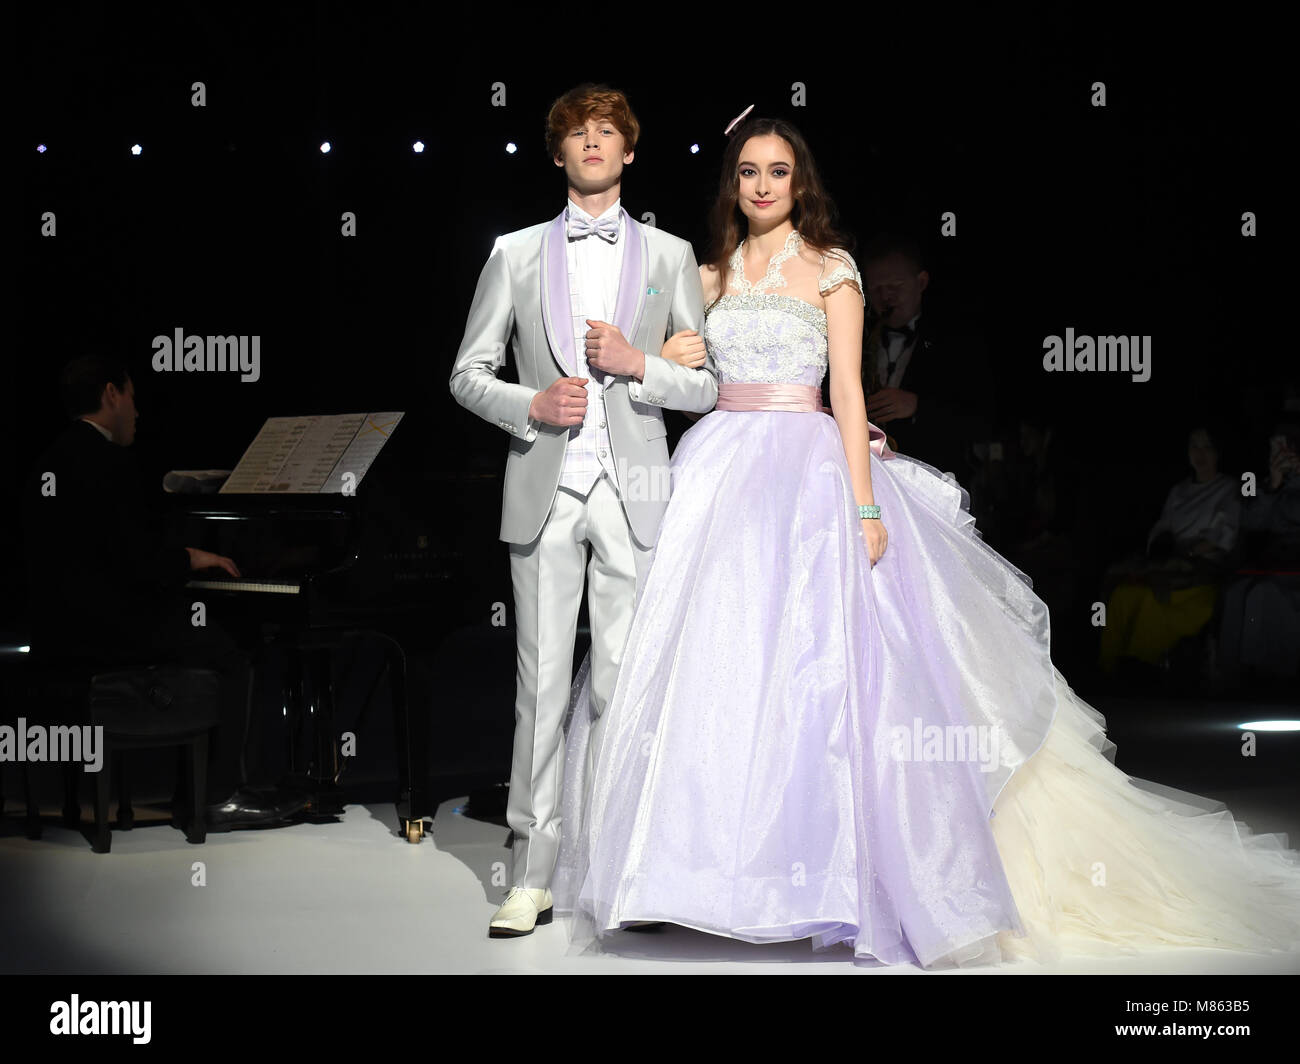 Japón. 15 Mar, 2018. Los modelos actuales inspirados en Disney vestidos de novia diseñado por Kuraudia Co. en Japón, 15 de marzo de Crédito: Ma Ping/Xinhua/Alamy Live News Fotografía